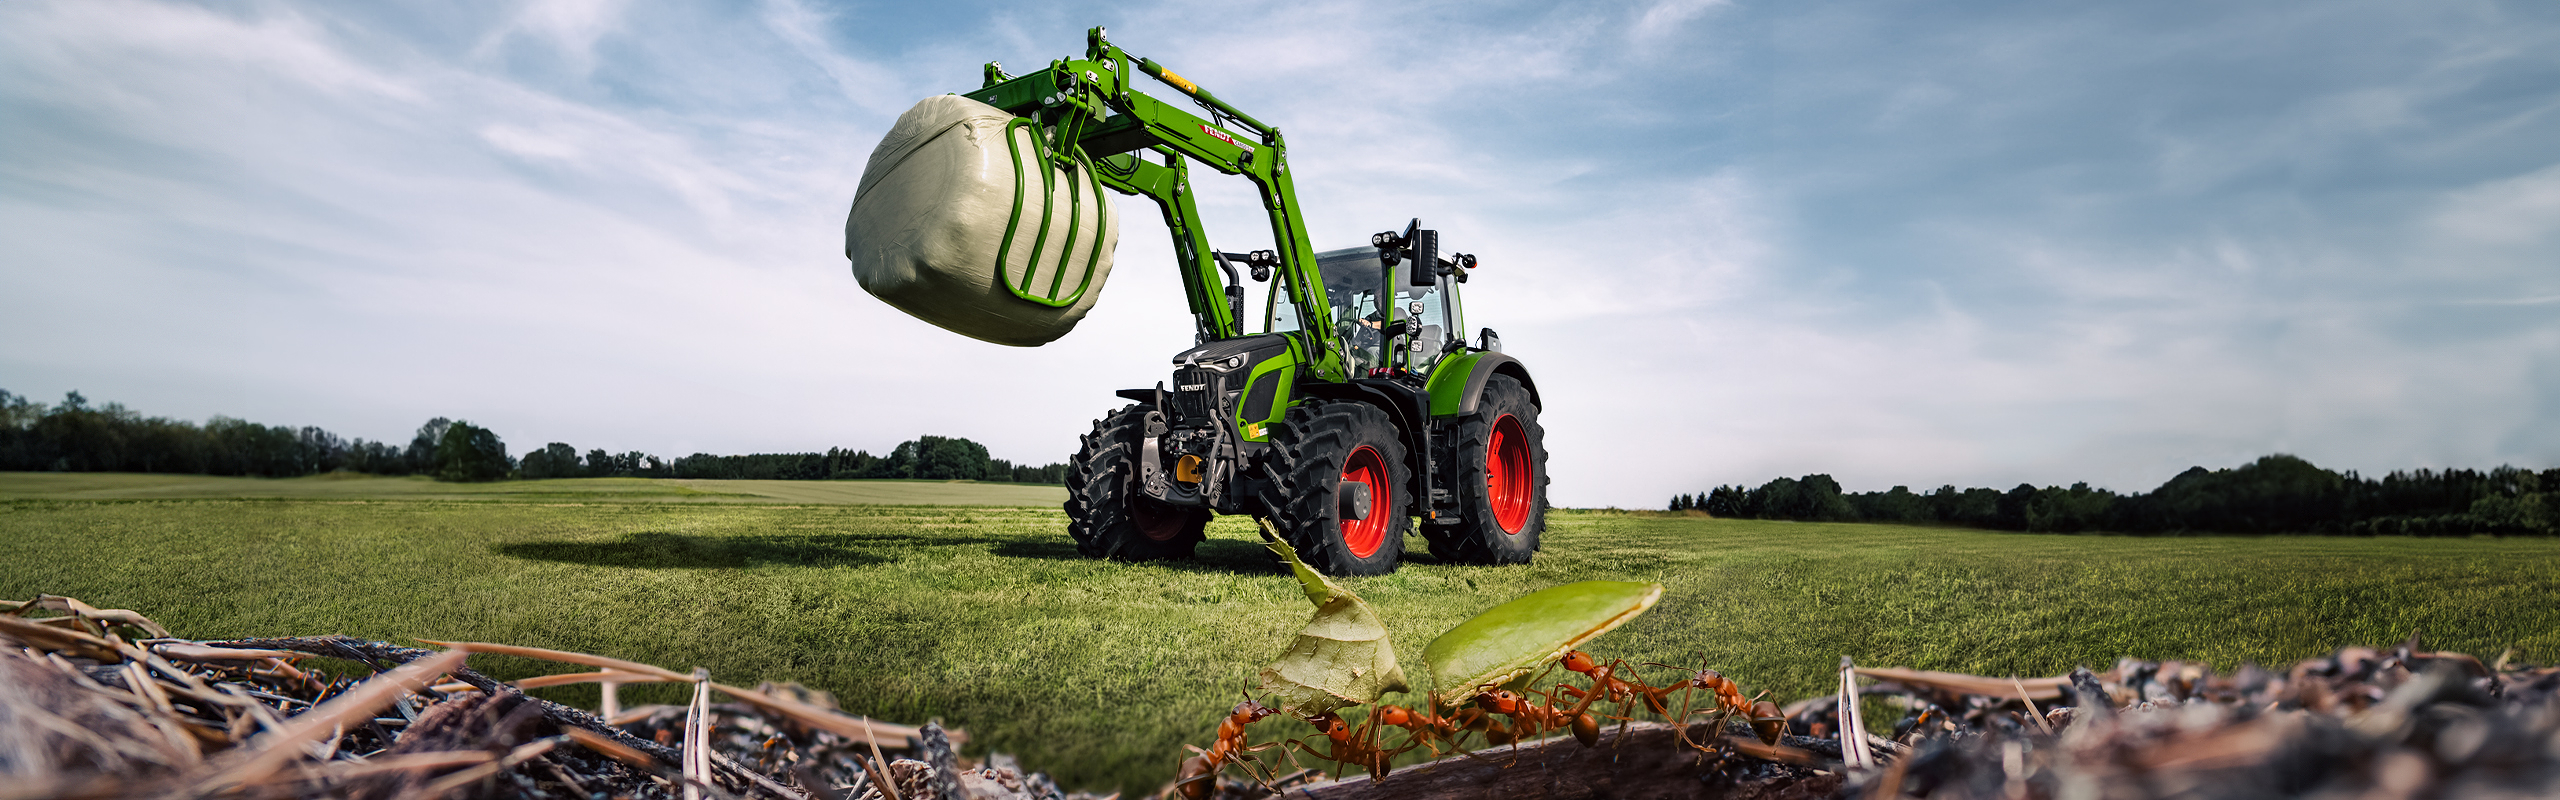 En Fendt 600 Vario-traktor står på fältet och lyfter en silobal. Myror kan ses i förgrunden.